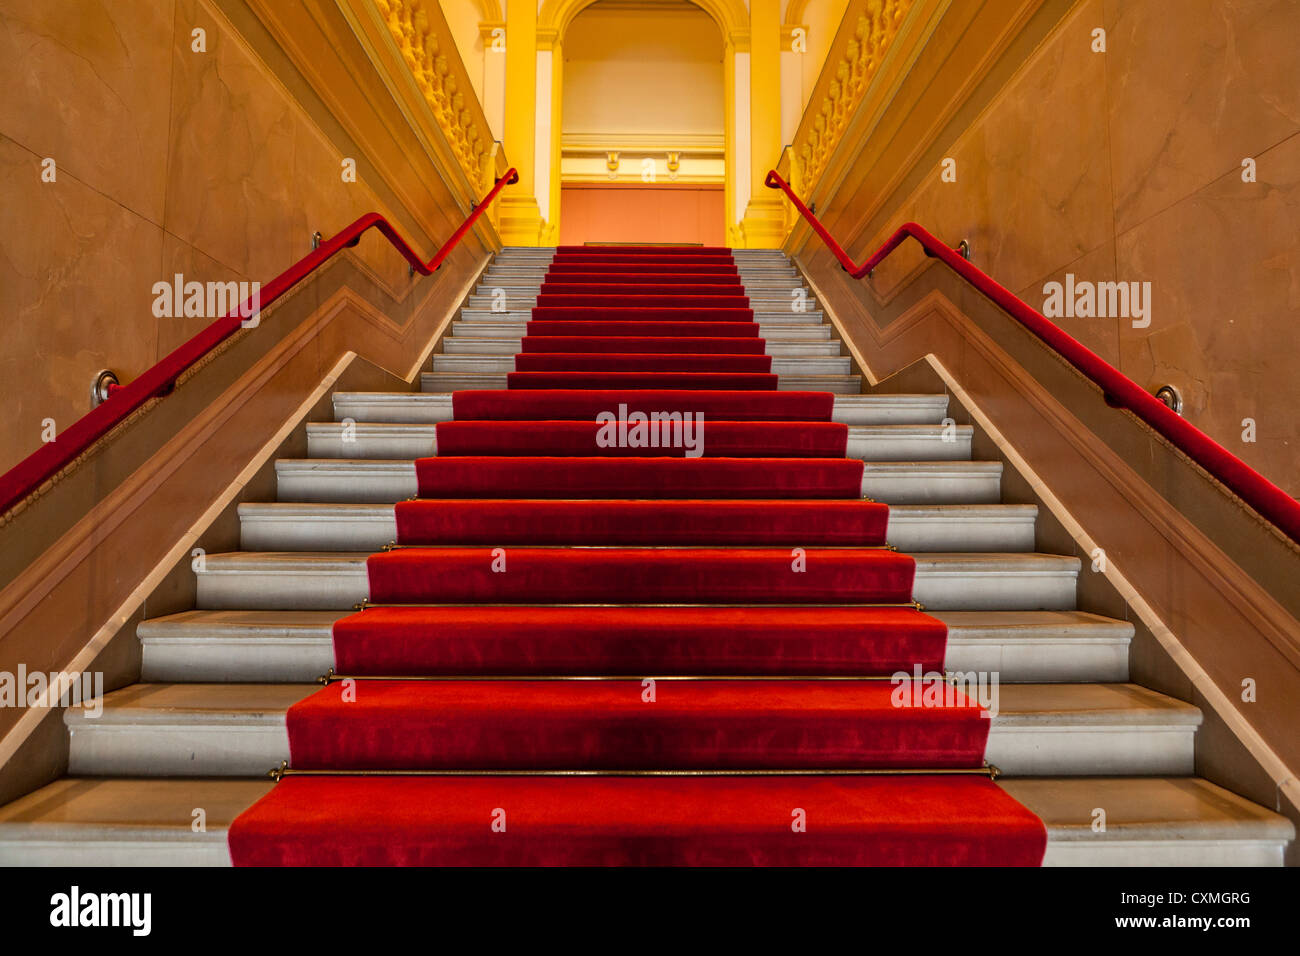 Escalier bordé de tapis rouge Banque D'Images